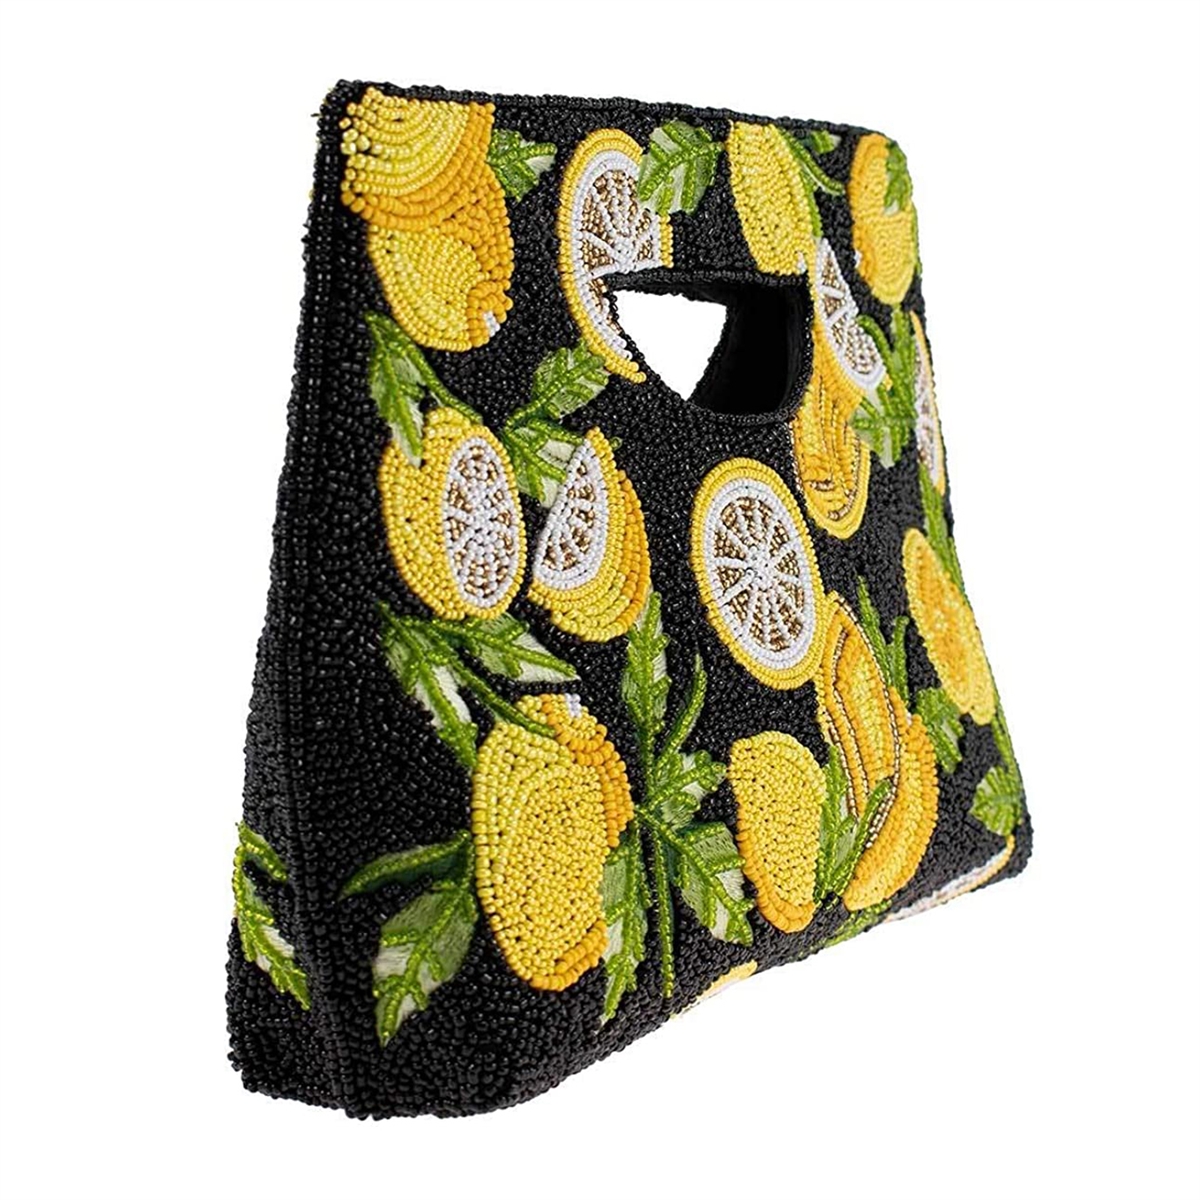 Mary Frances Beaded Tart Lemon Embellished Yellow Handbag Fruit Bag WH